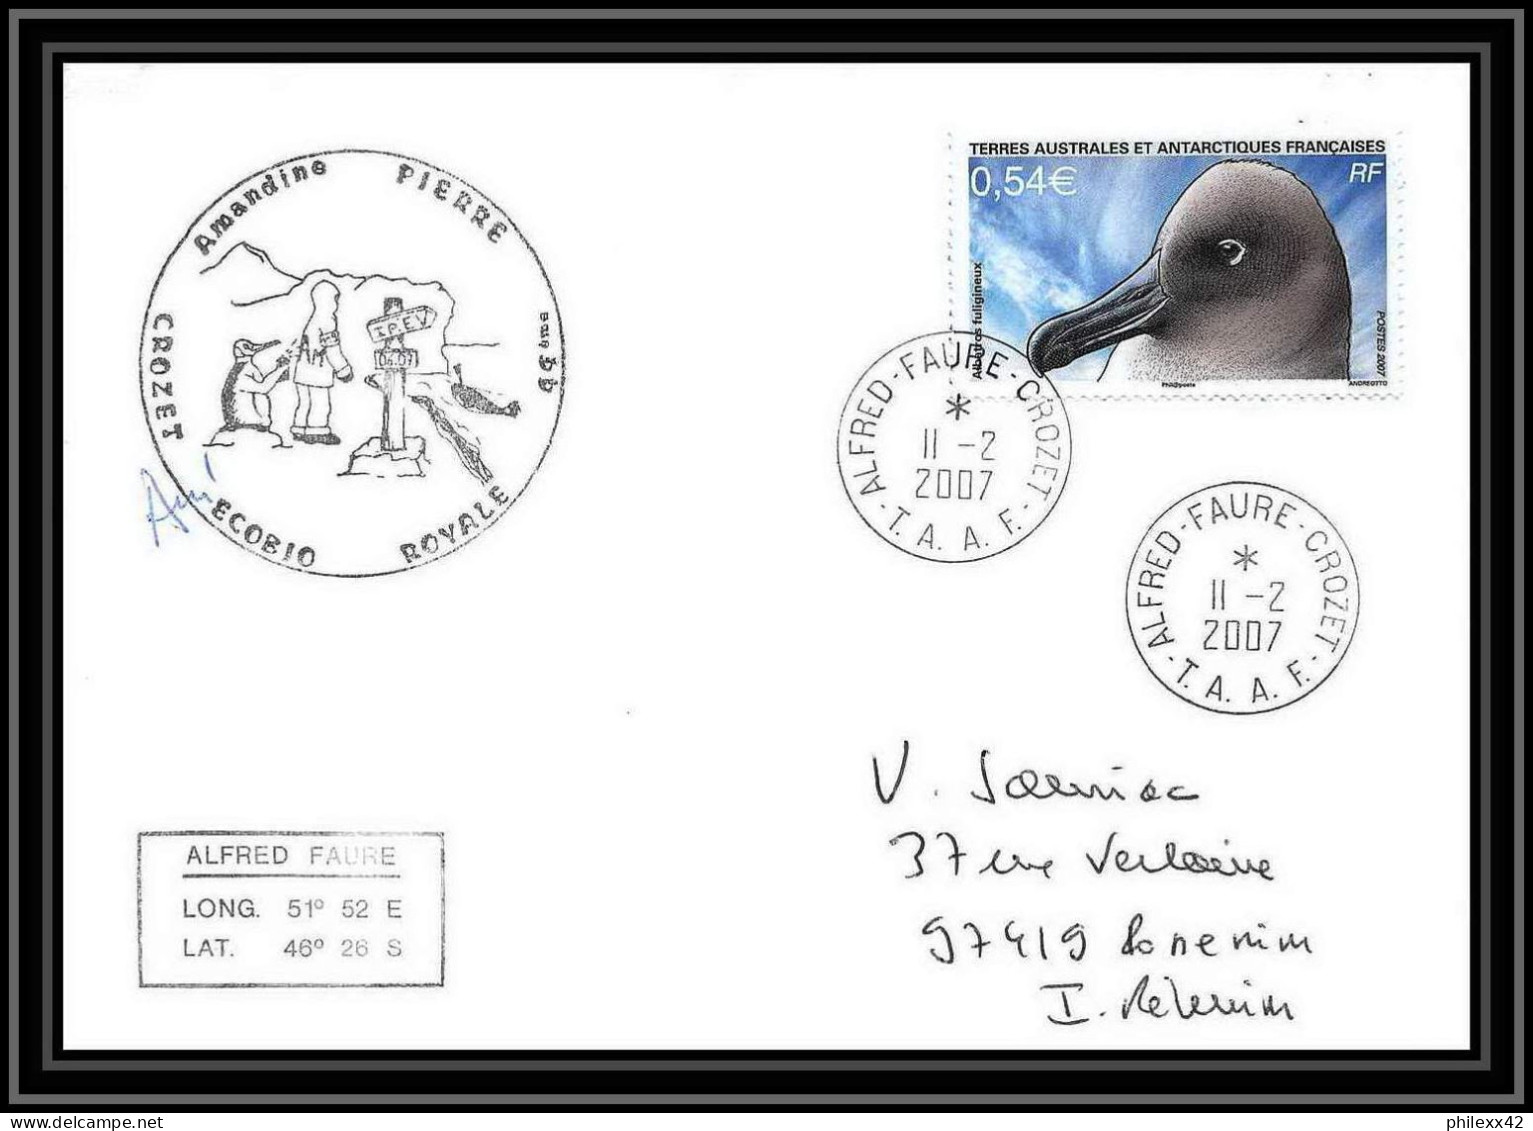 2660 ANTARCTIC TAAF Lettre Cover Dufresne 2 Signé Signed N°468 Crozet Ecobuo Royale 2007 Reunion Oiseaux (birds) - Expéditions Antarctiques